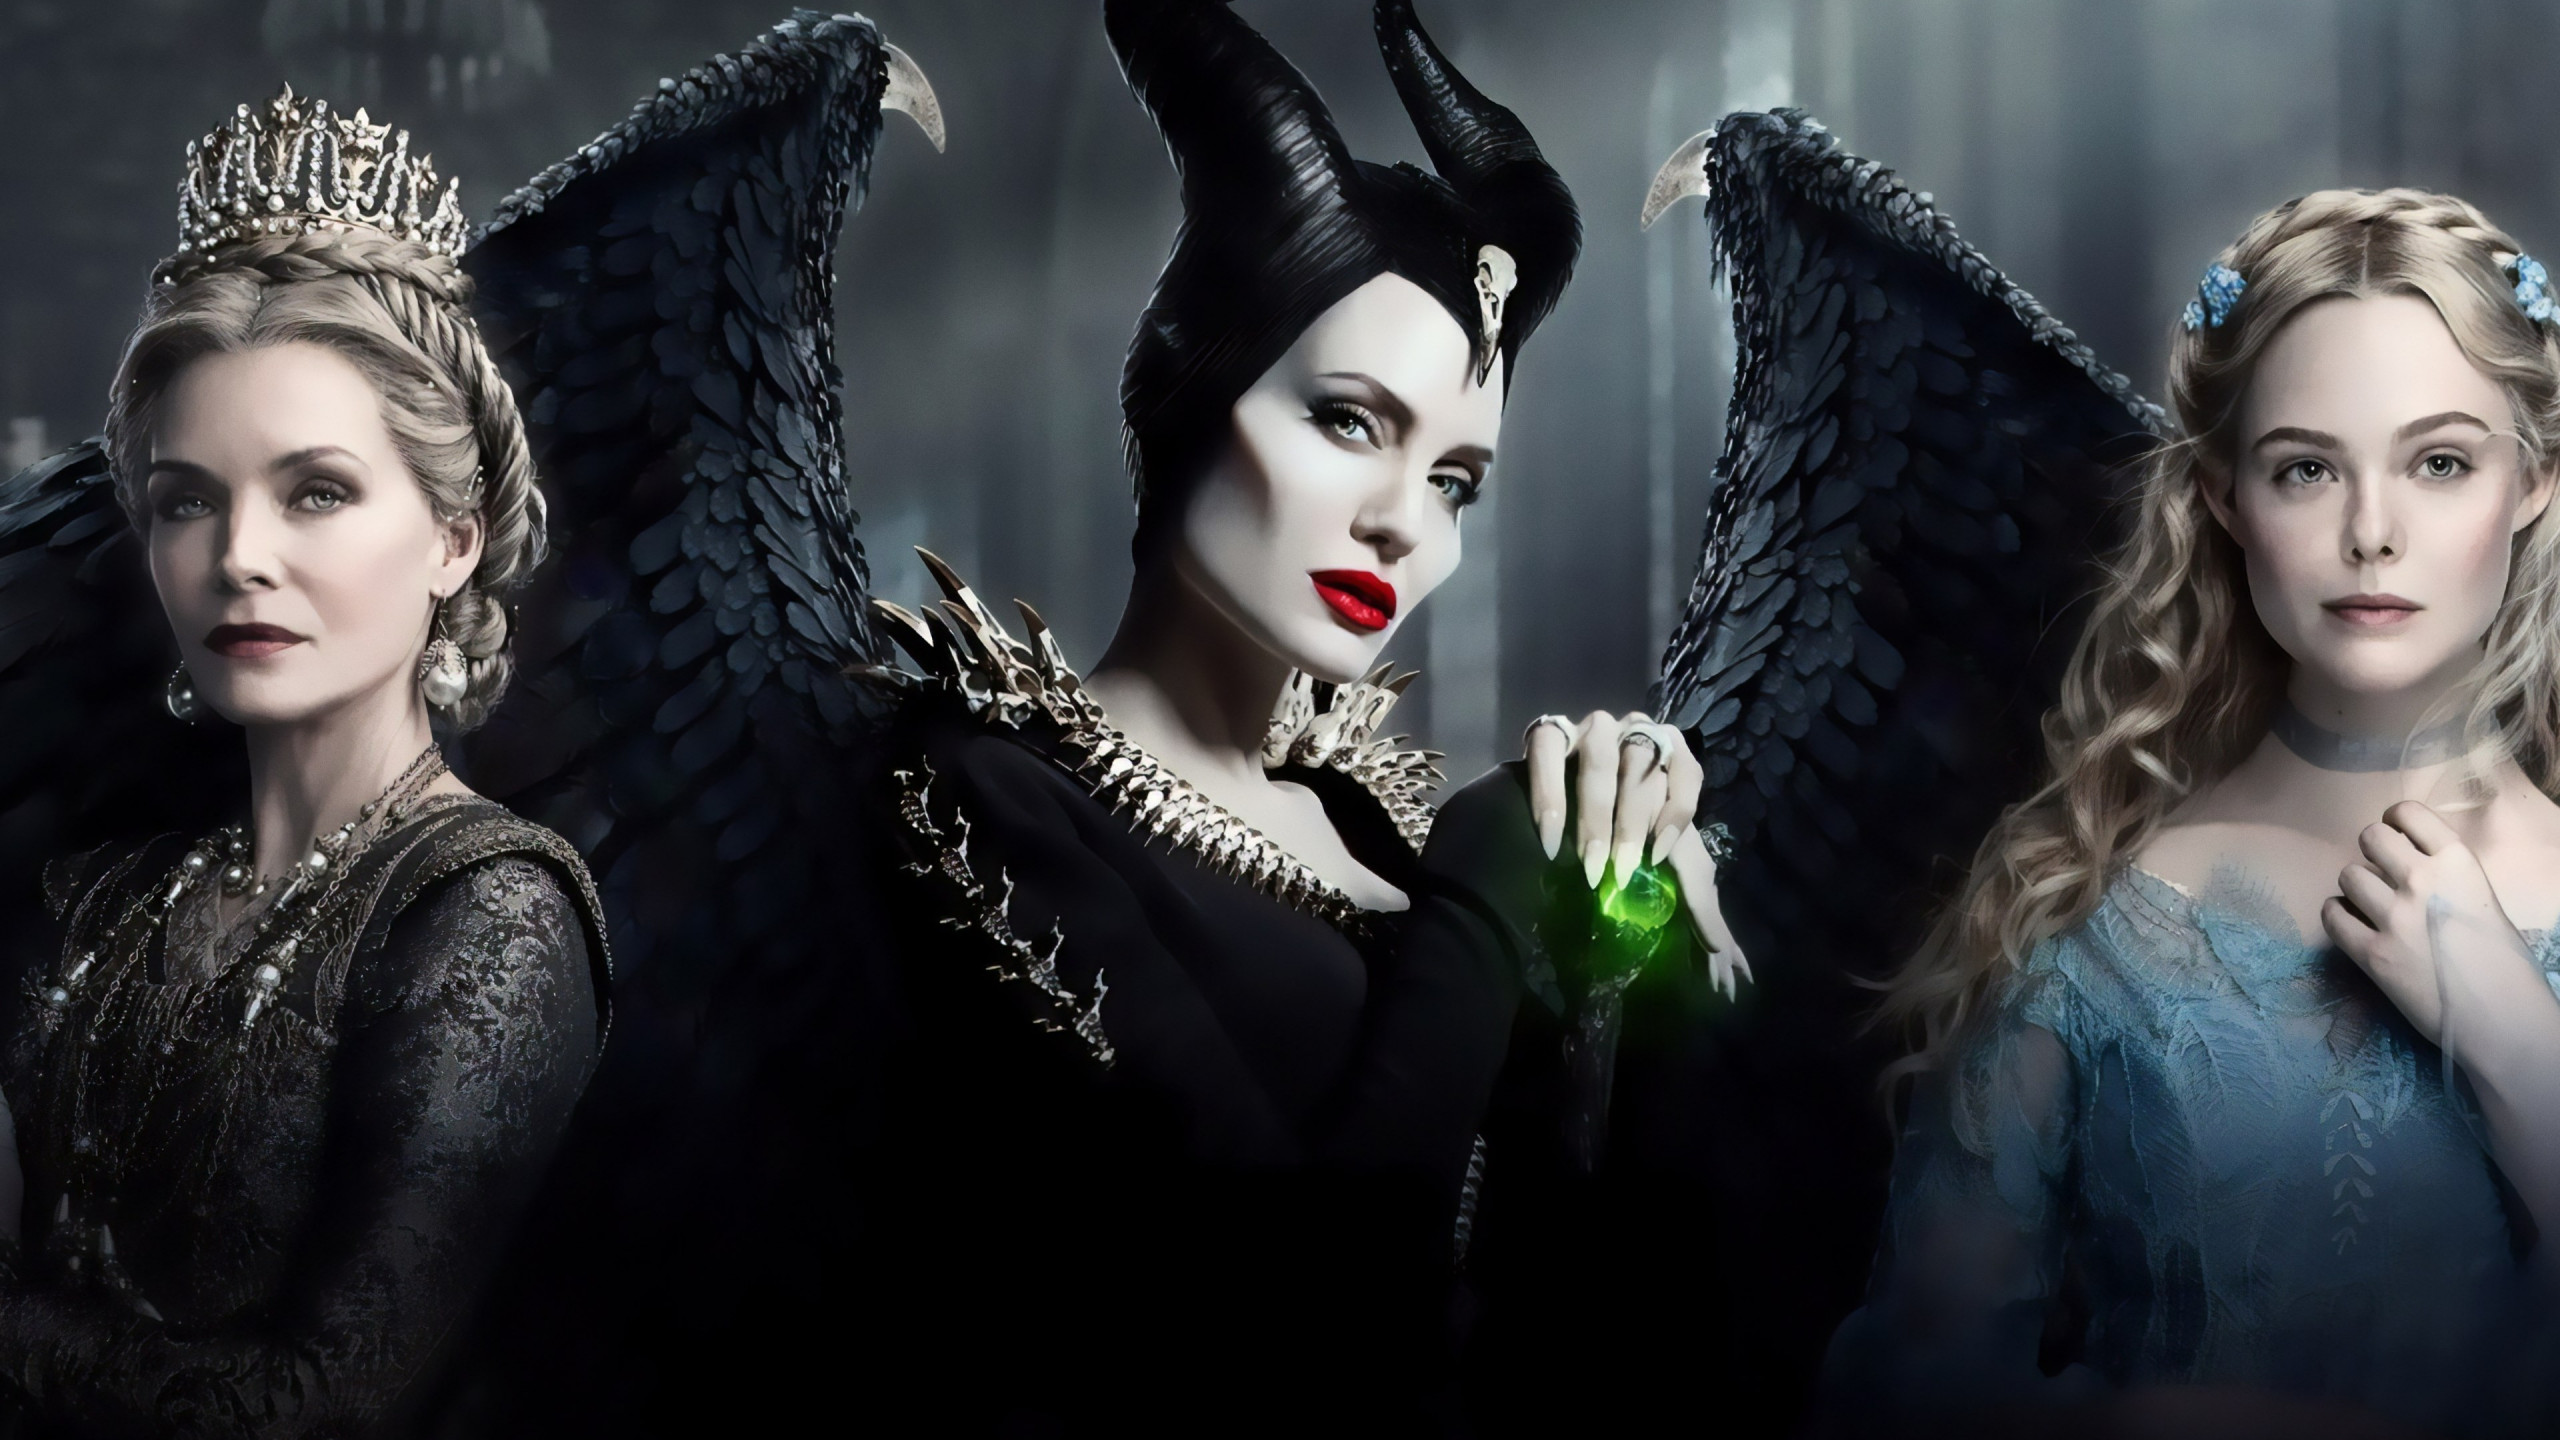 Maleficent: Mistress of Evil wallpaper 2560x1440